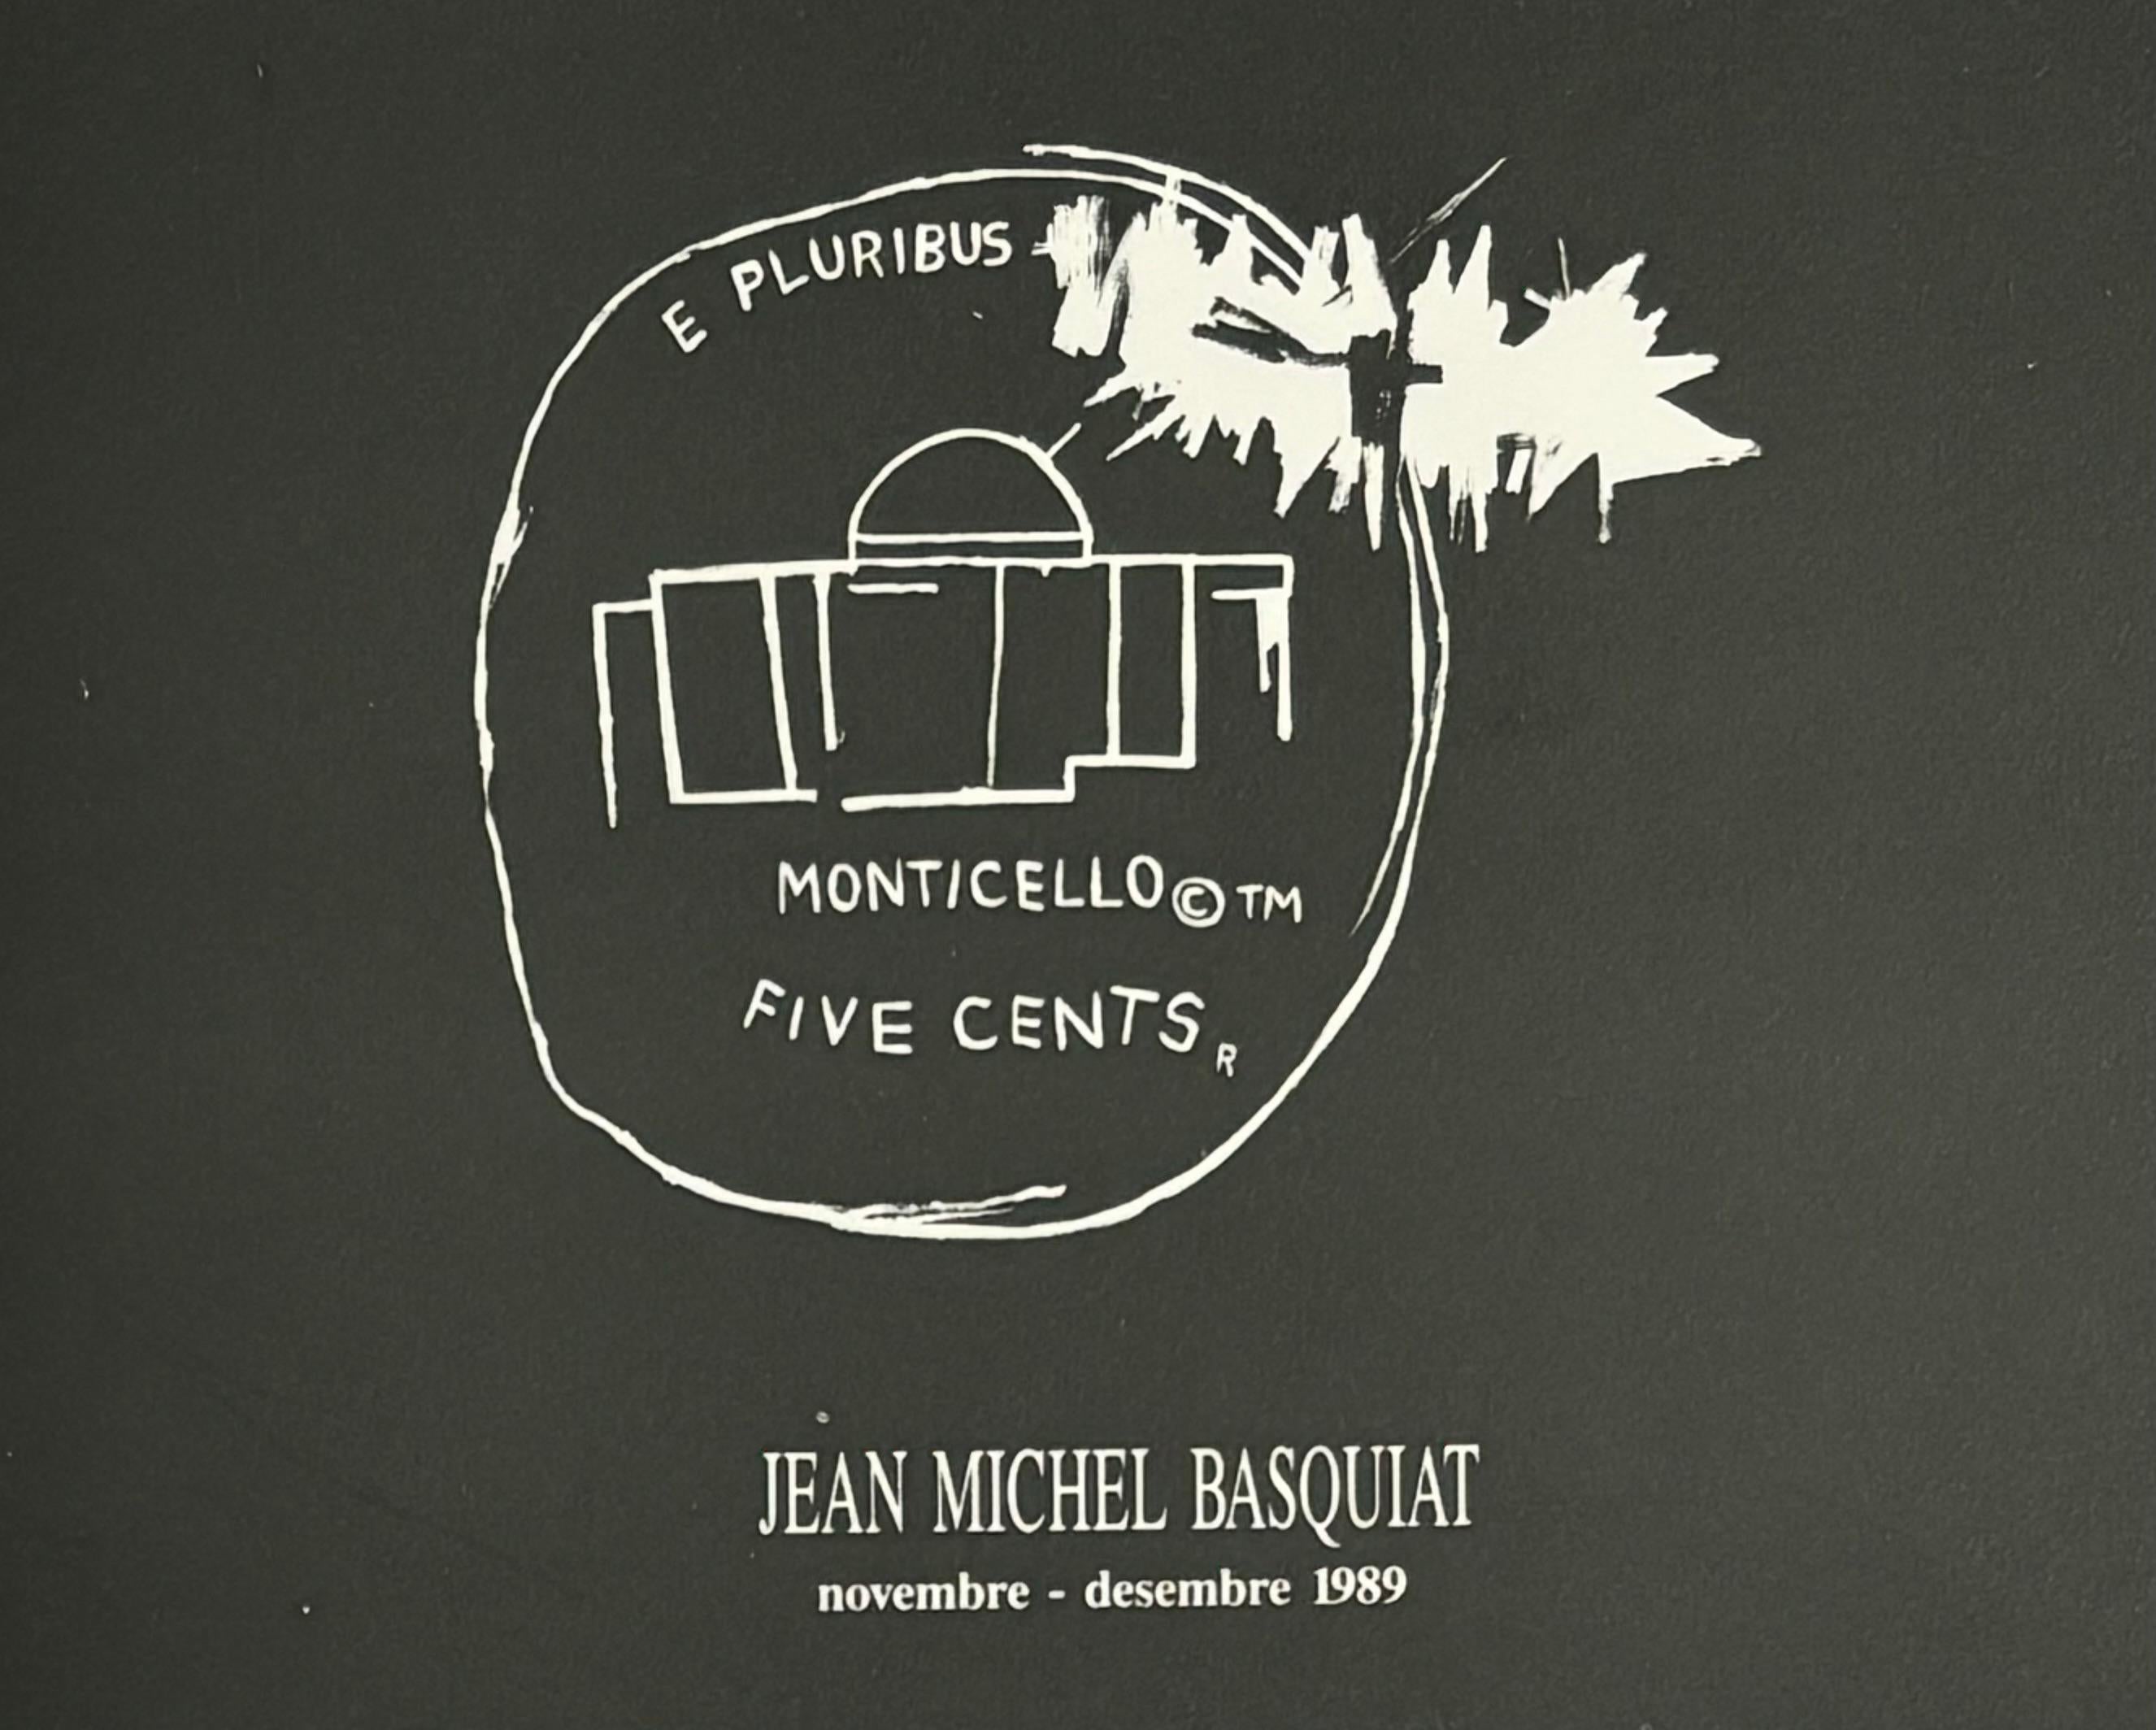 Jean-Michel Basquiat Barcelone 1989 : 
Rare faire-part vintage 1989 de Jean-Michel Basquiat publié à l'occasion de Jean-Michel Basquiat : Dau al Set Galeria A, Barcelone, Espagne 1989. 

Faire-part imprimé en offset. 
4 x 8.25 pouces. 
Très bon état